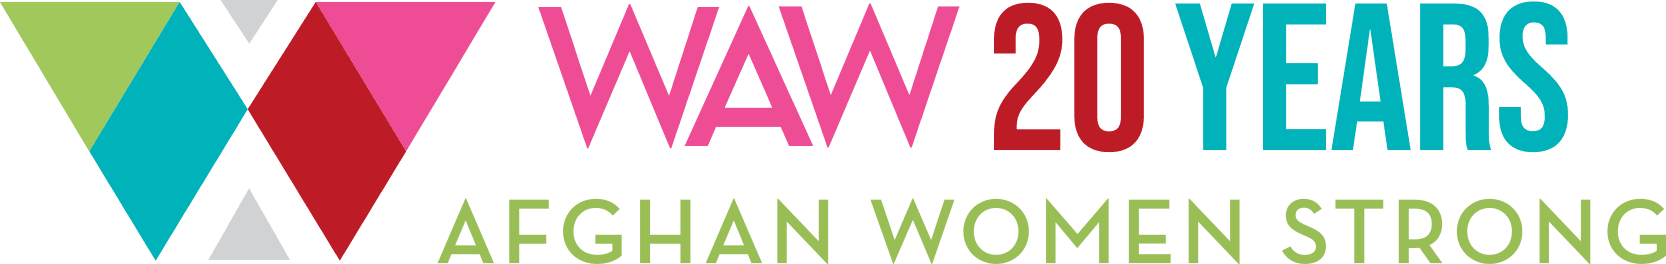 WAW-CharityAuction 橫幅